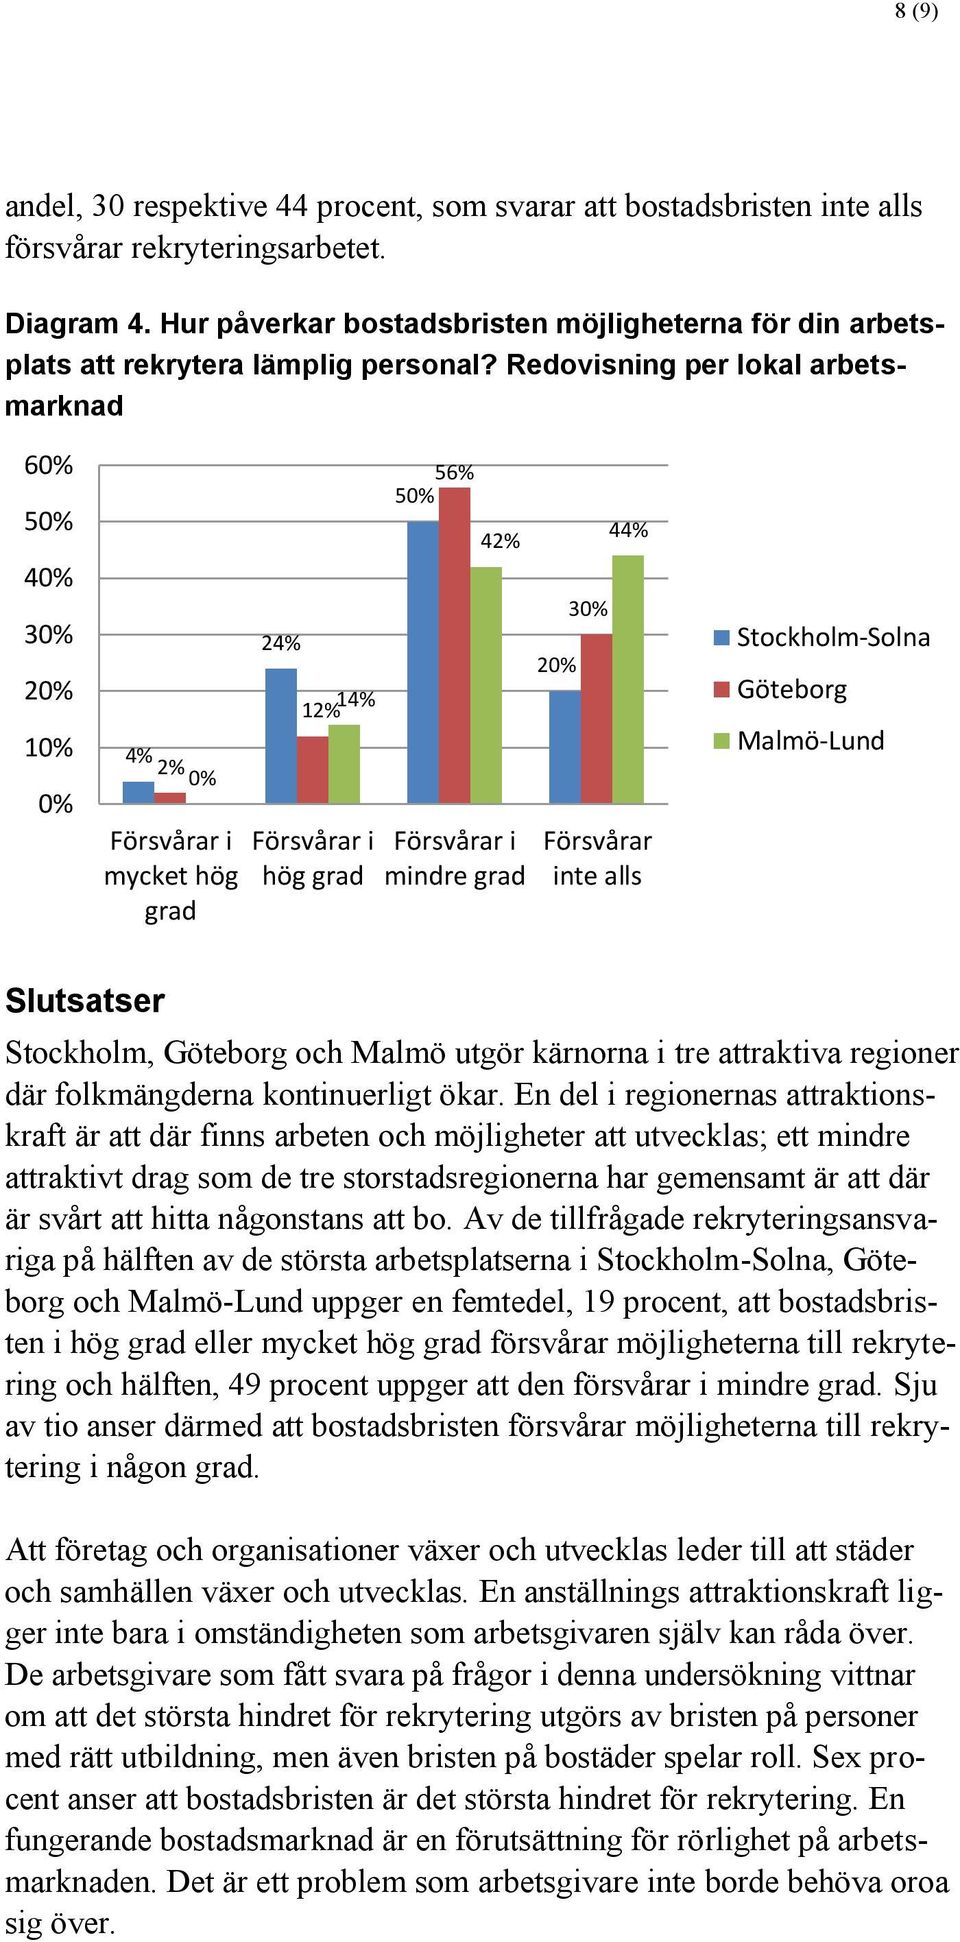 Redovisning per lokal arbetsmarknad 6 5 4 1 4% 2% mycket hög grad 24% 12% 14% hög grad 56% 5 42% mindre grad 44% Försvårar inte alls Stockholm-Solna Göteborg Malmö-Lund Slutsatser Stockholm, Göteborg